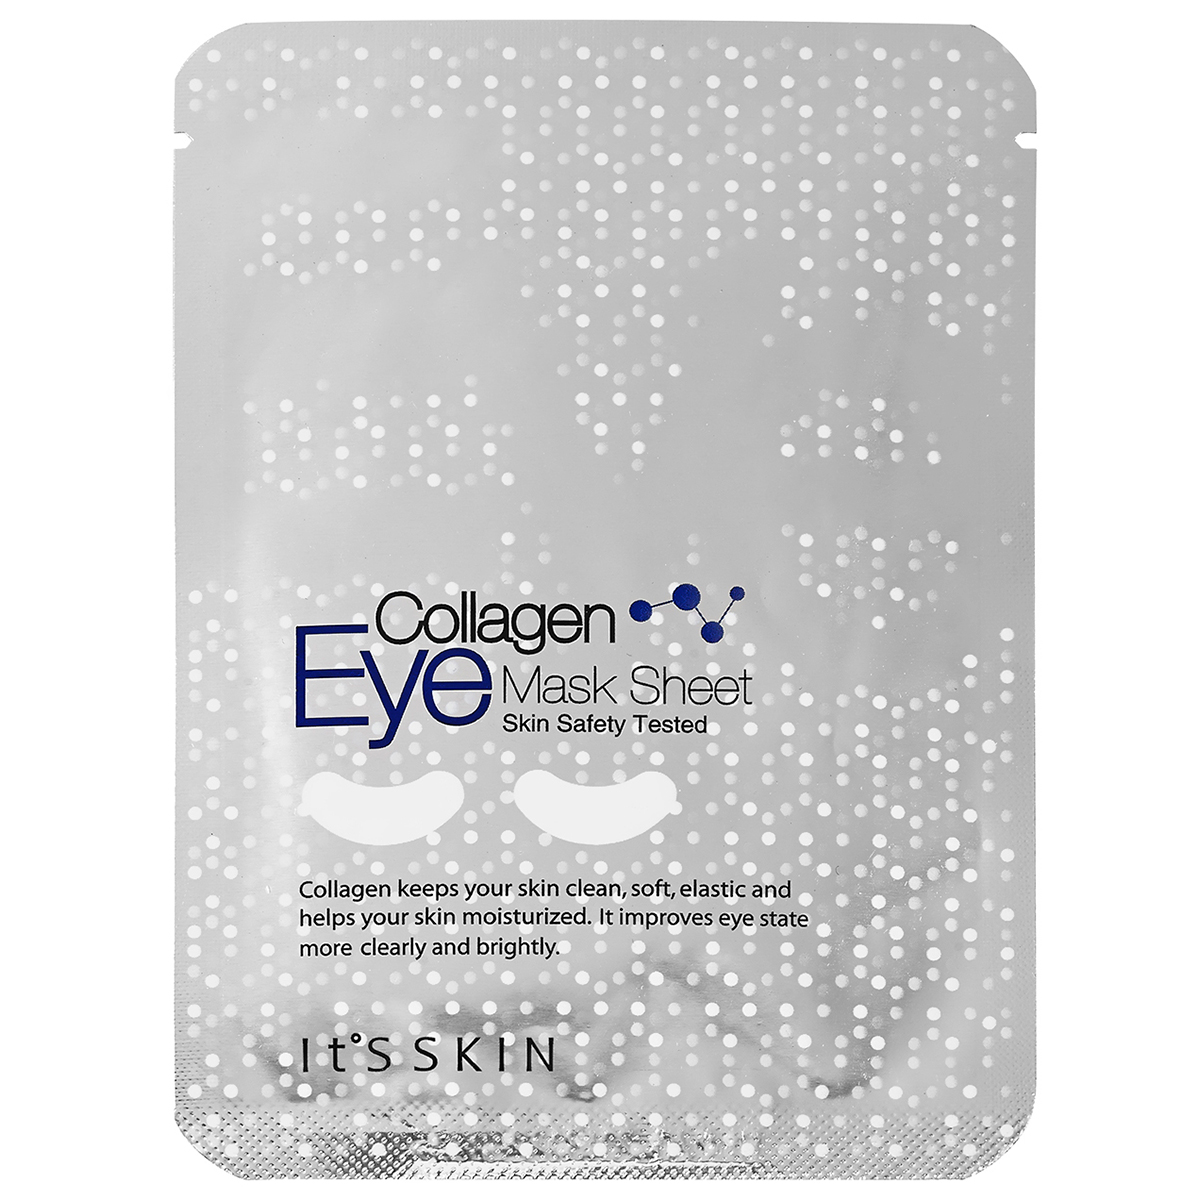 Eye mask sheet Collagen, It'S SKIN Kasvonaamio